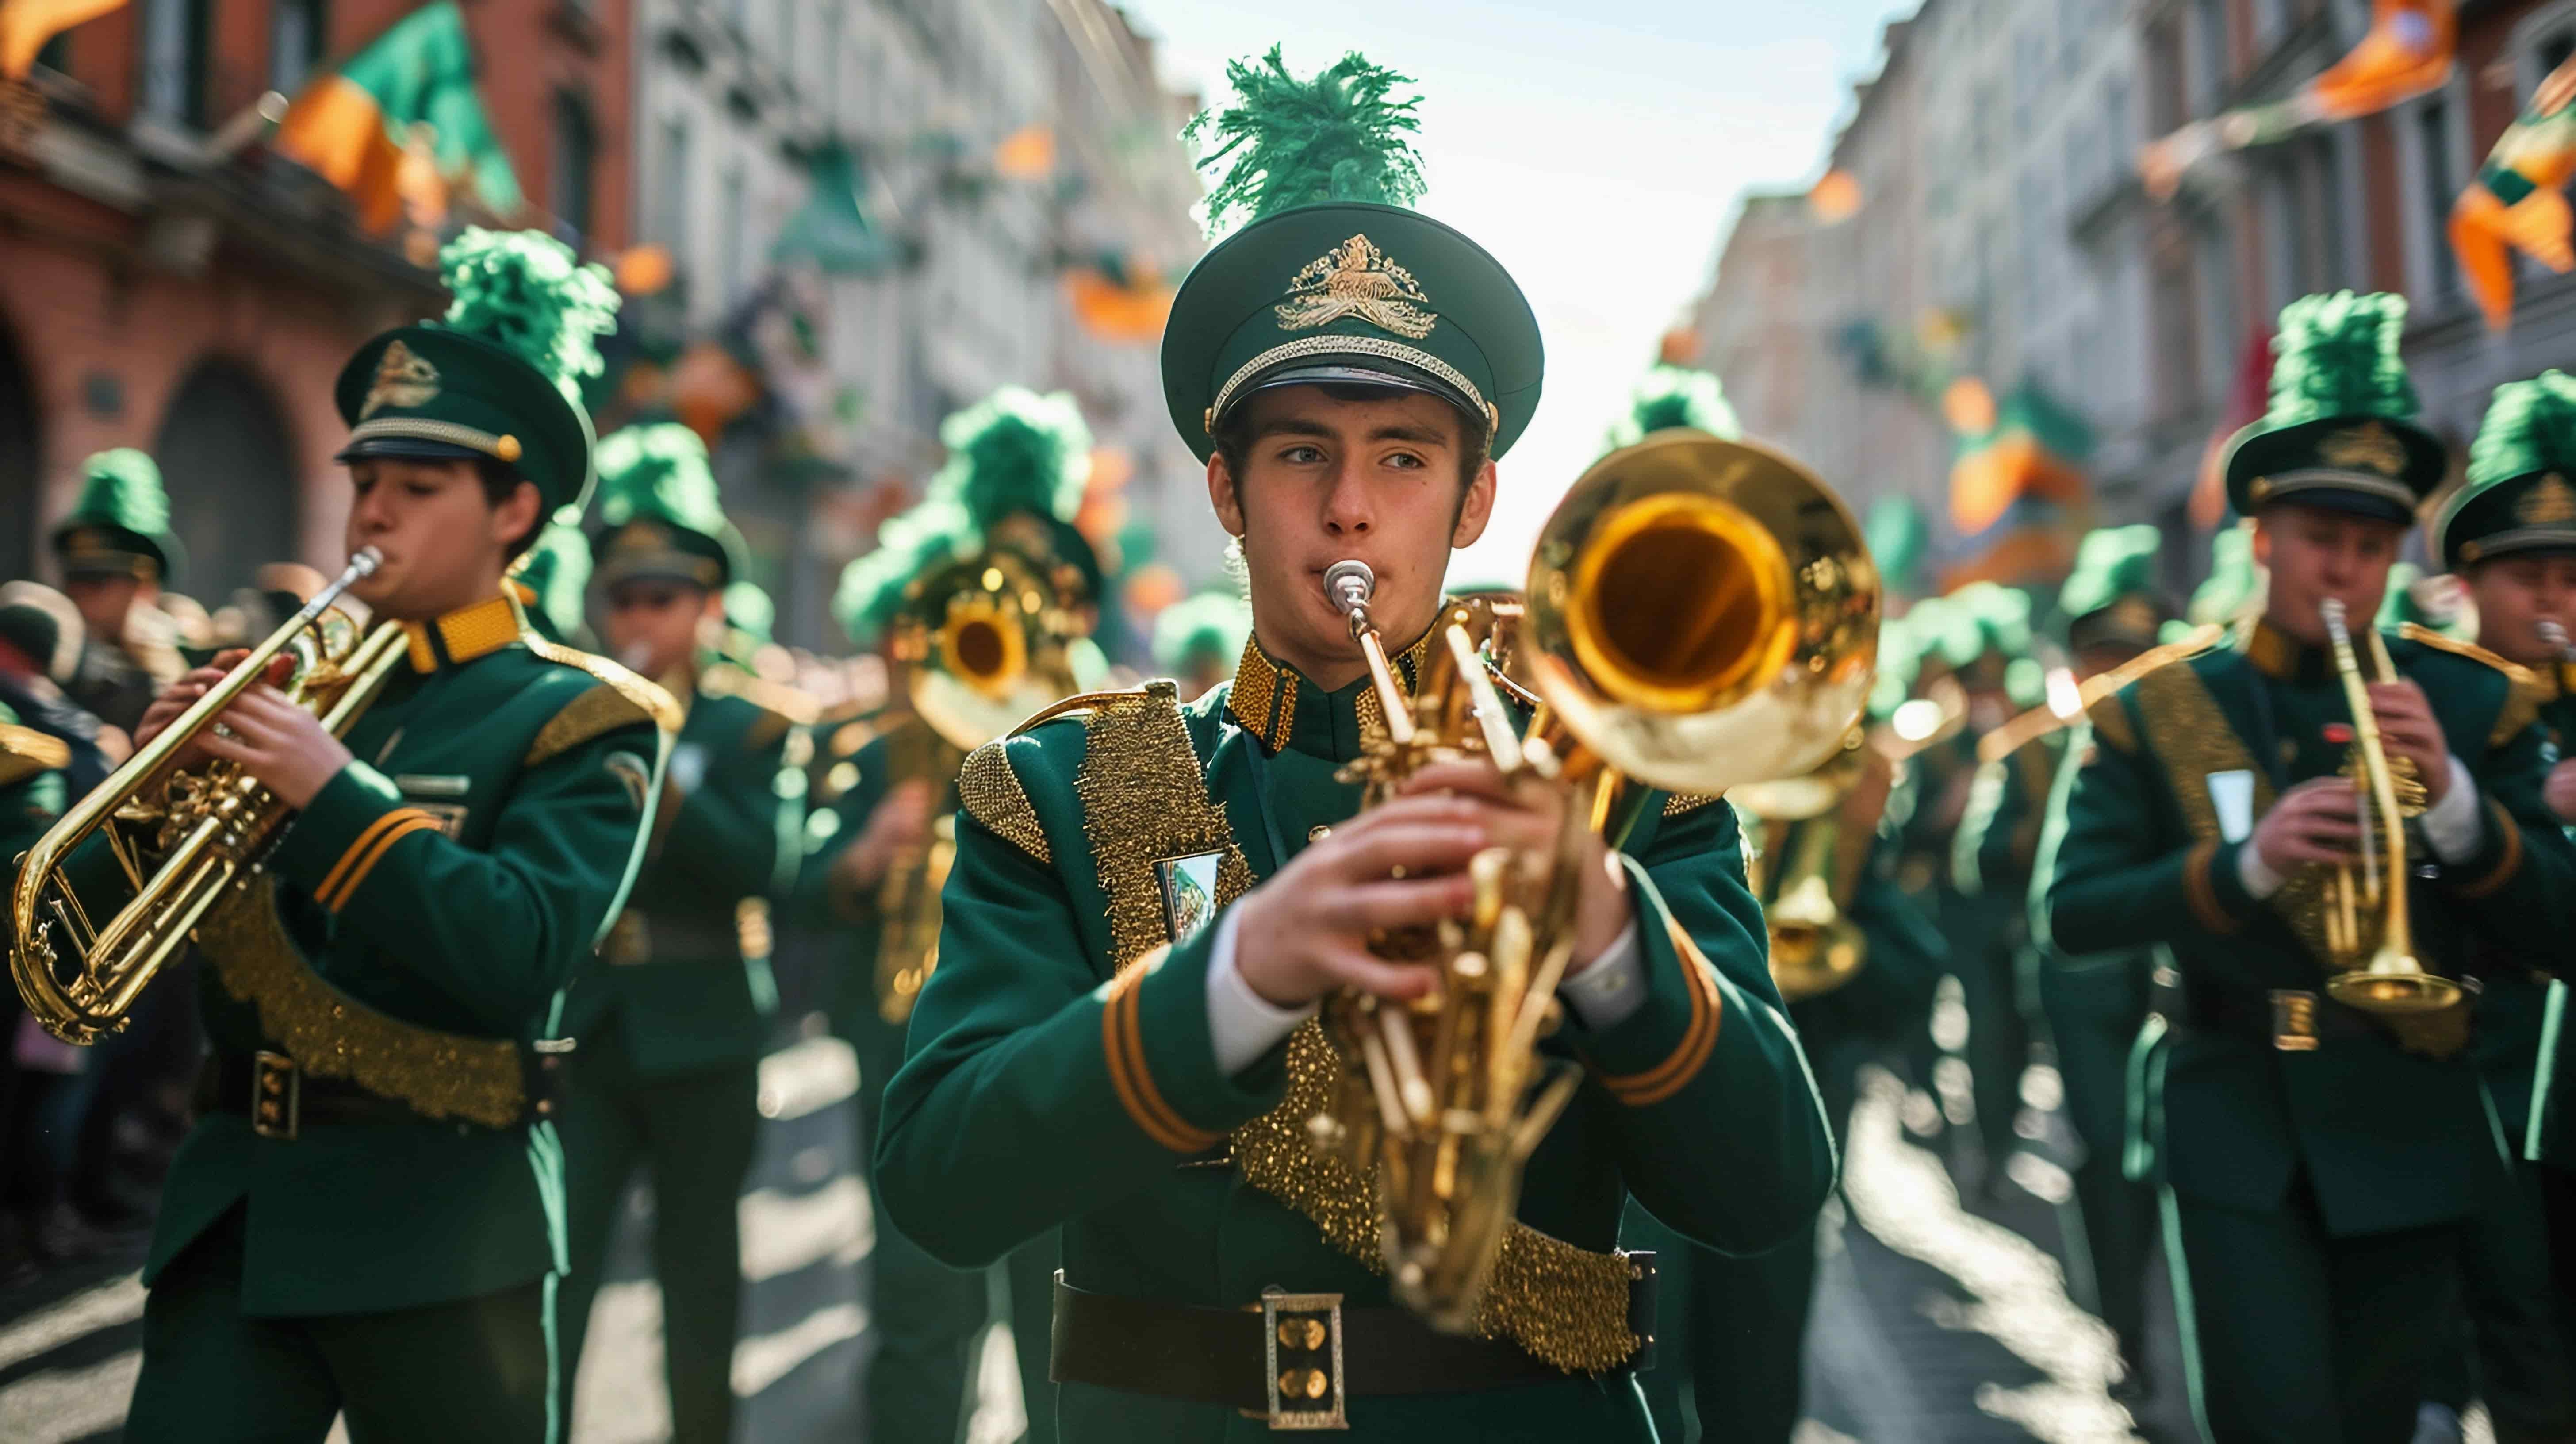 Homem tocando em banda marcial do Saint Patrick's Day